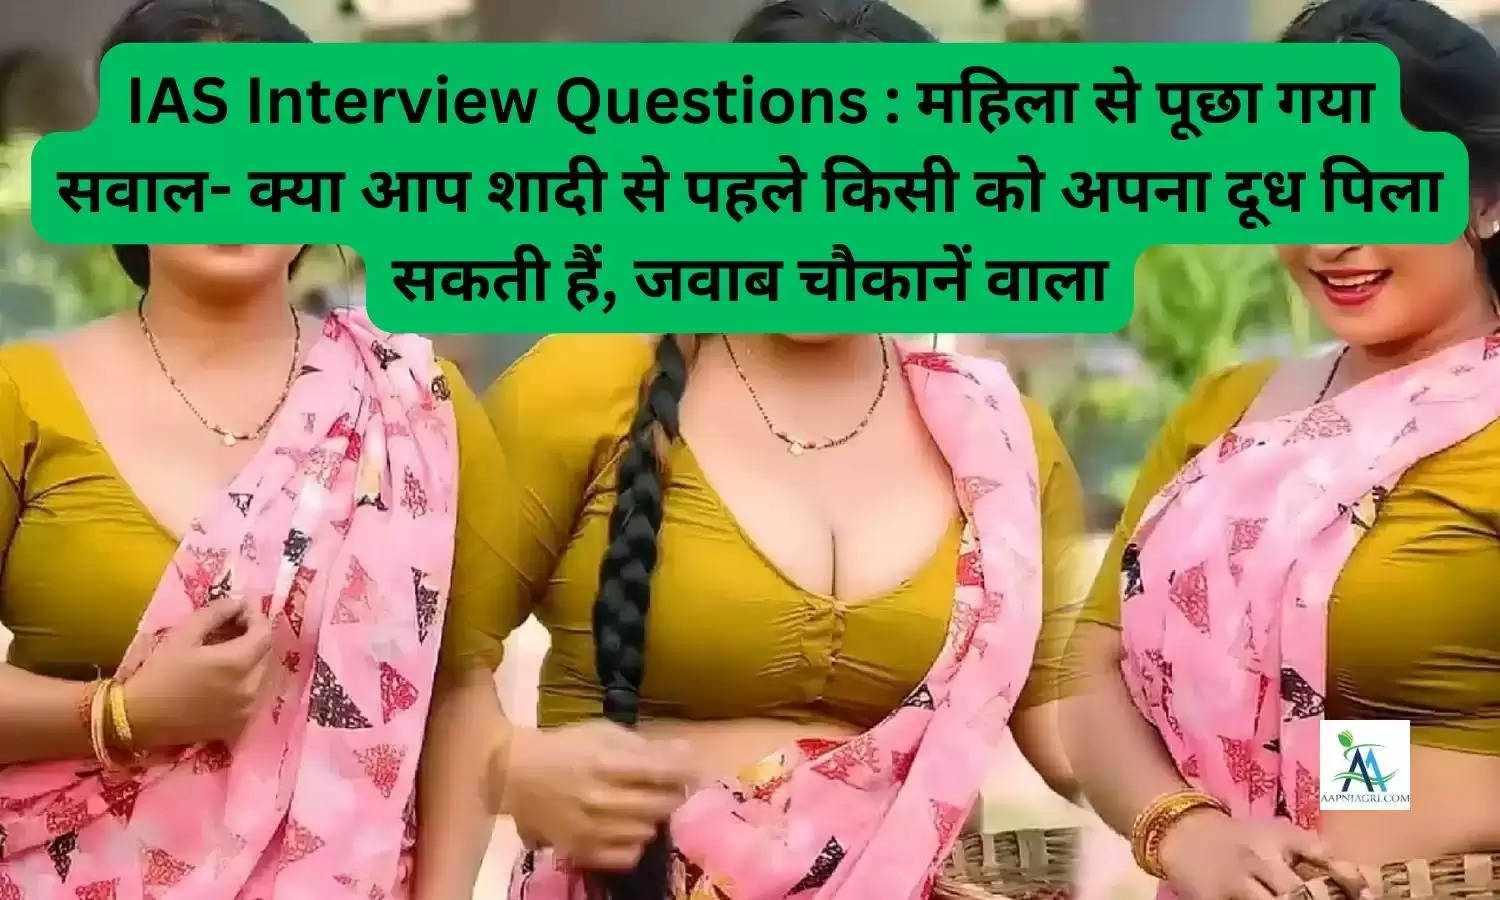 IAS Interview Questions : महिला से पूछा गया सवाल- क्या आप शादी से पहले किसी को अपना दूध पिला सकती हैं, जवाब चौकानें वाला